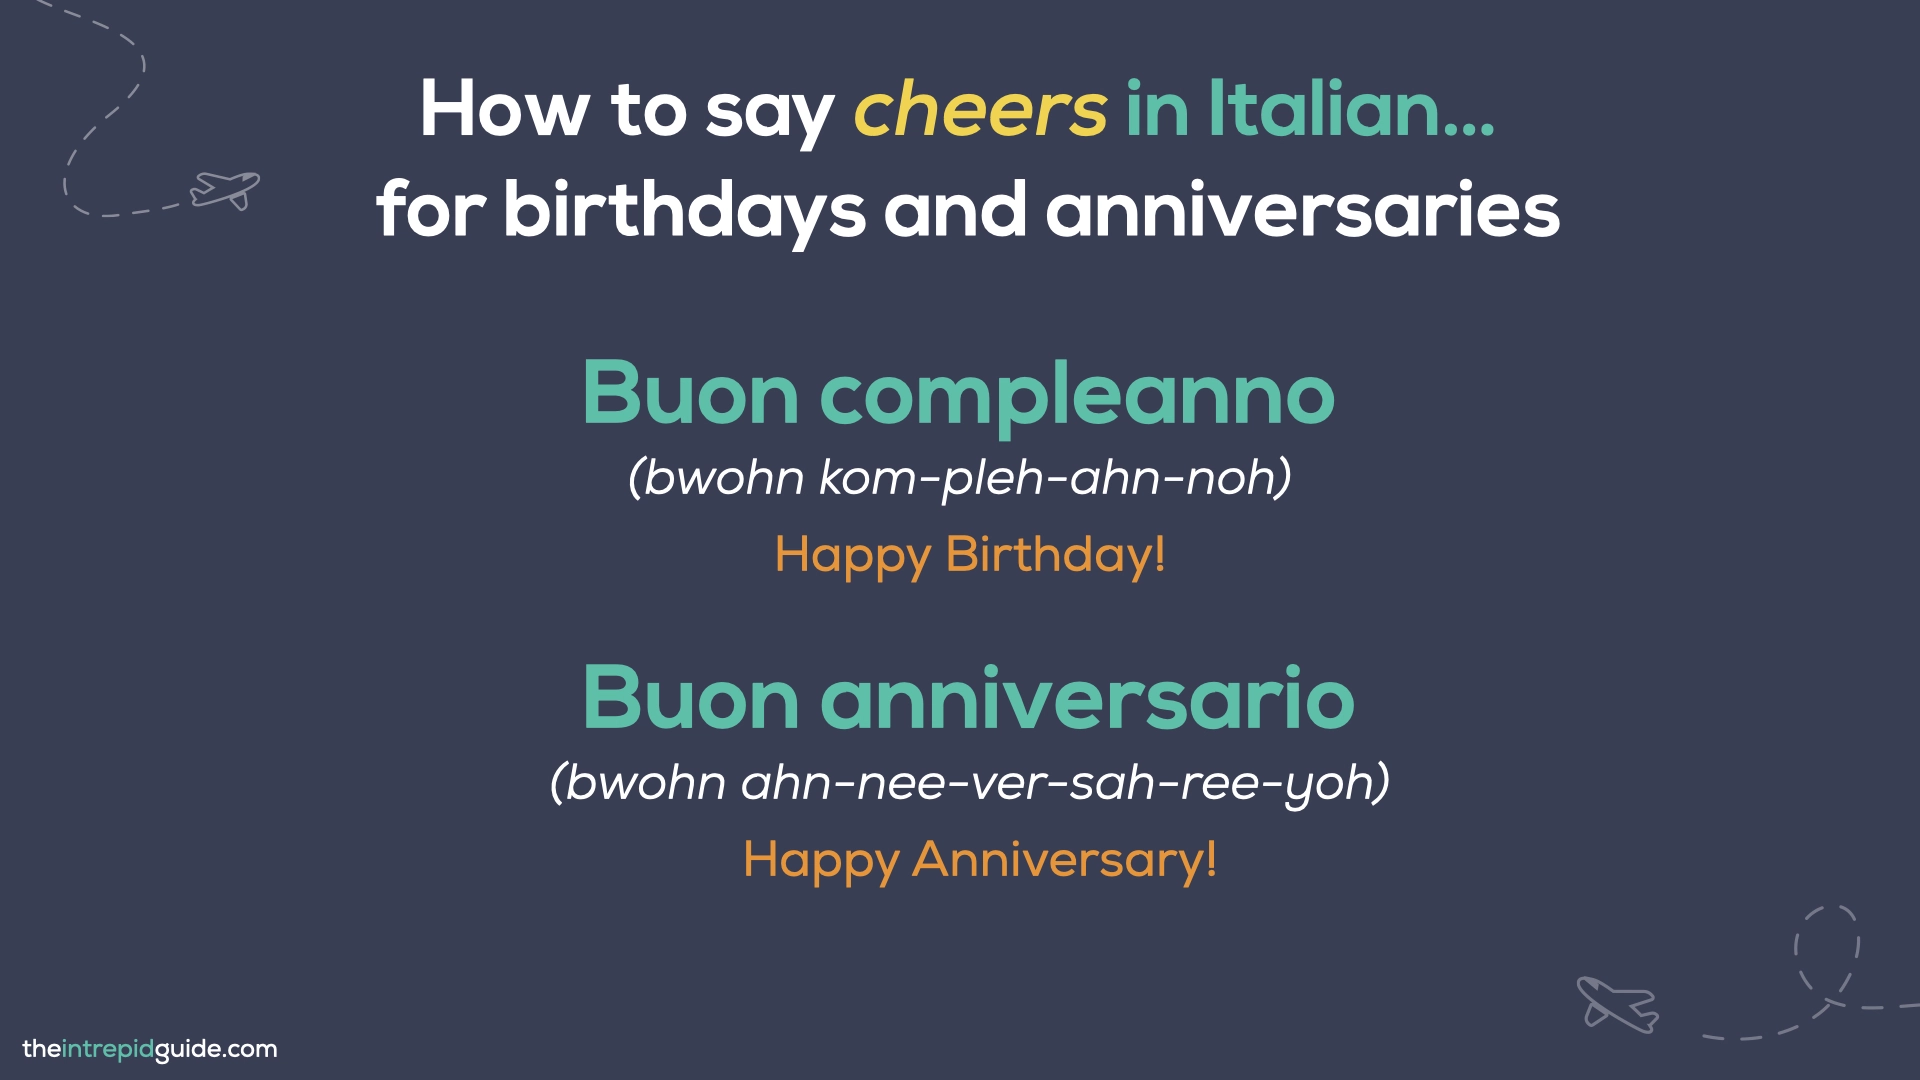 How to say cheers in Italian - Buon compleanno, Buon anniversario